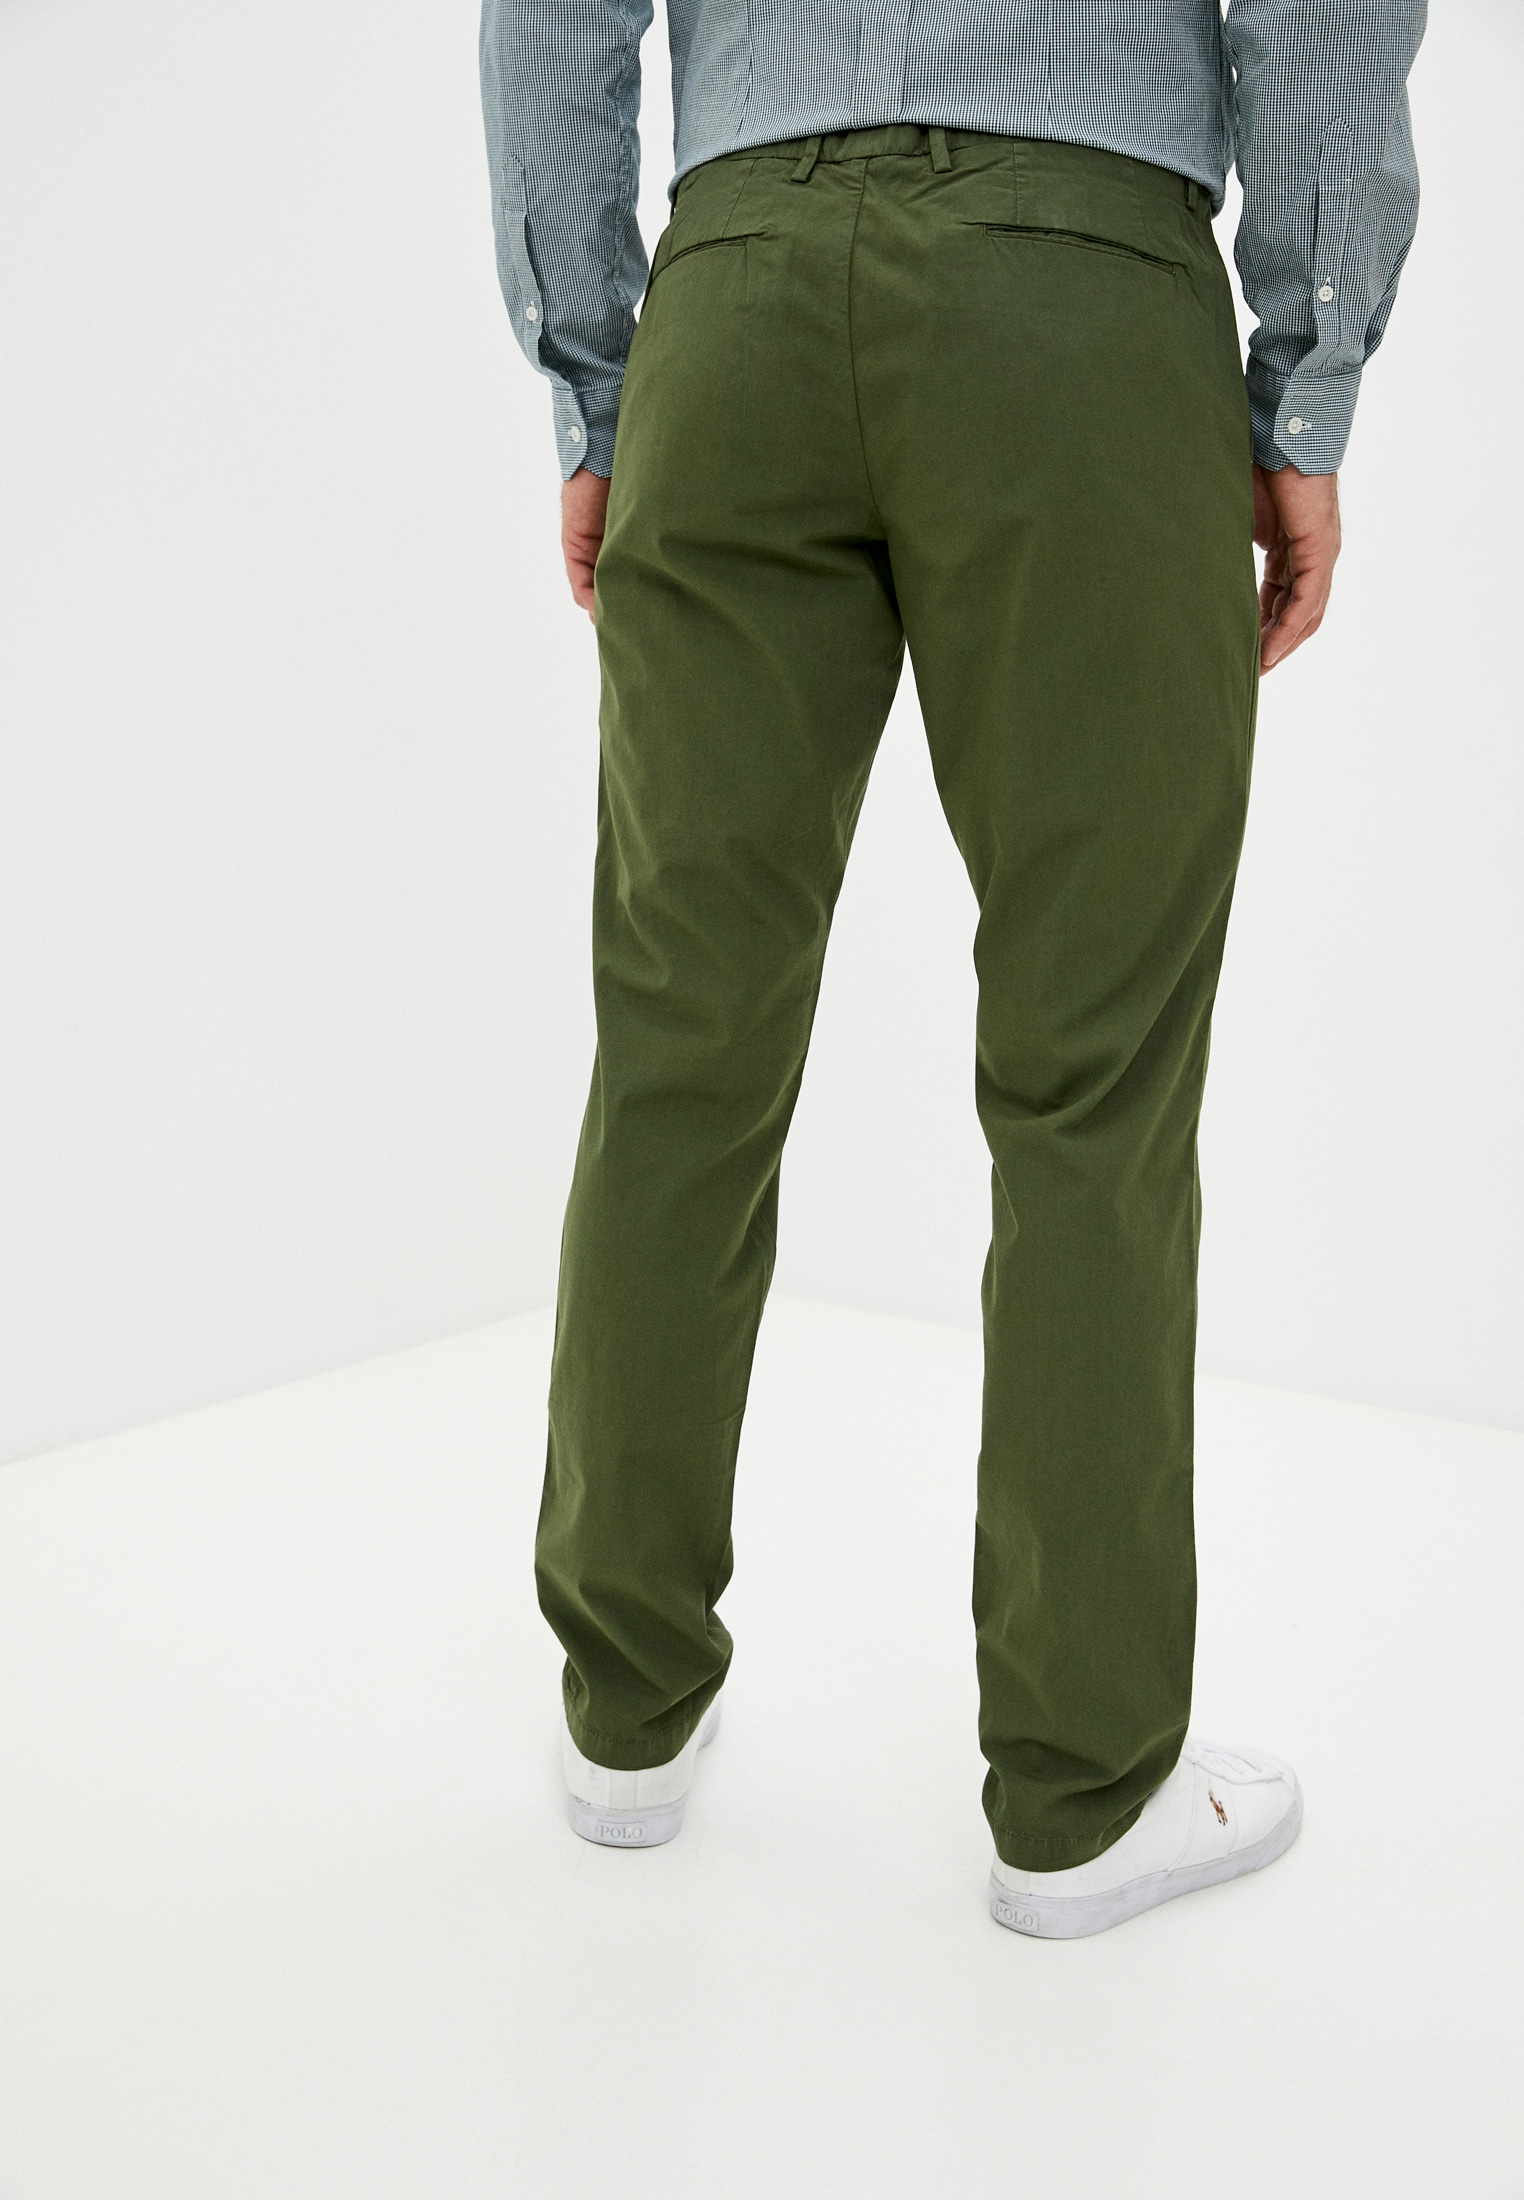 Мужские повседневные брюки Trussardi (Труссарди) 52P00000-1T002638-H-001: изображение 4